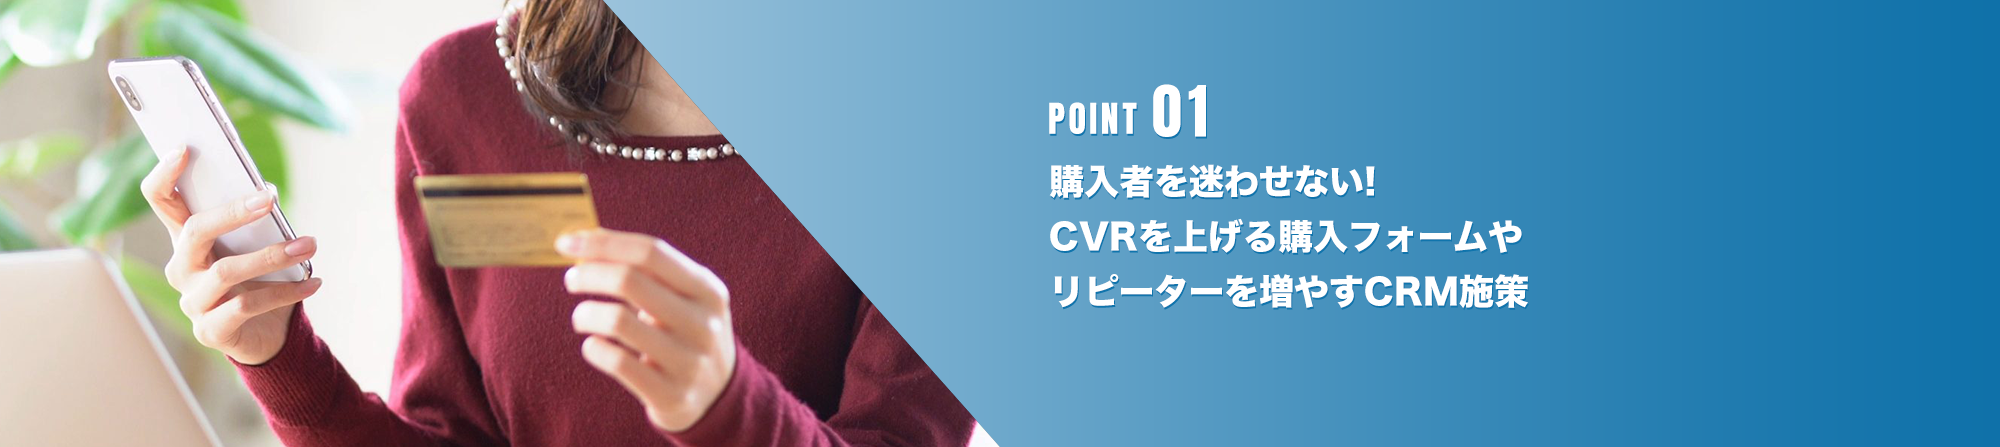 point01 購入者を迷わせないCVRアップの購入フォームやリピーターを増やすCRM拡大